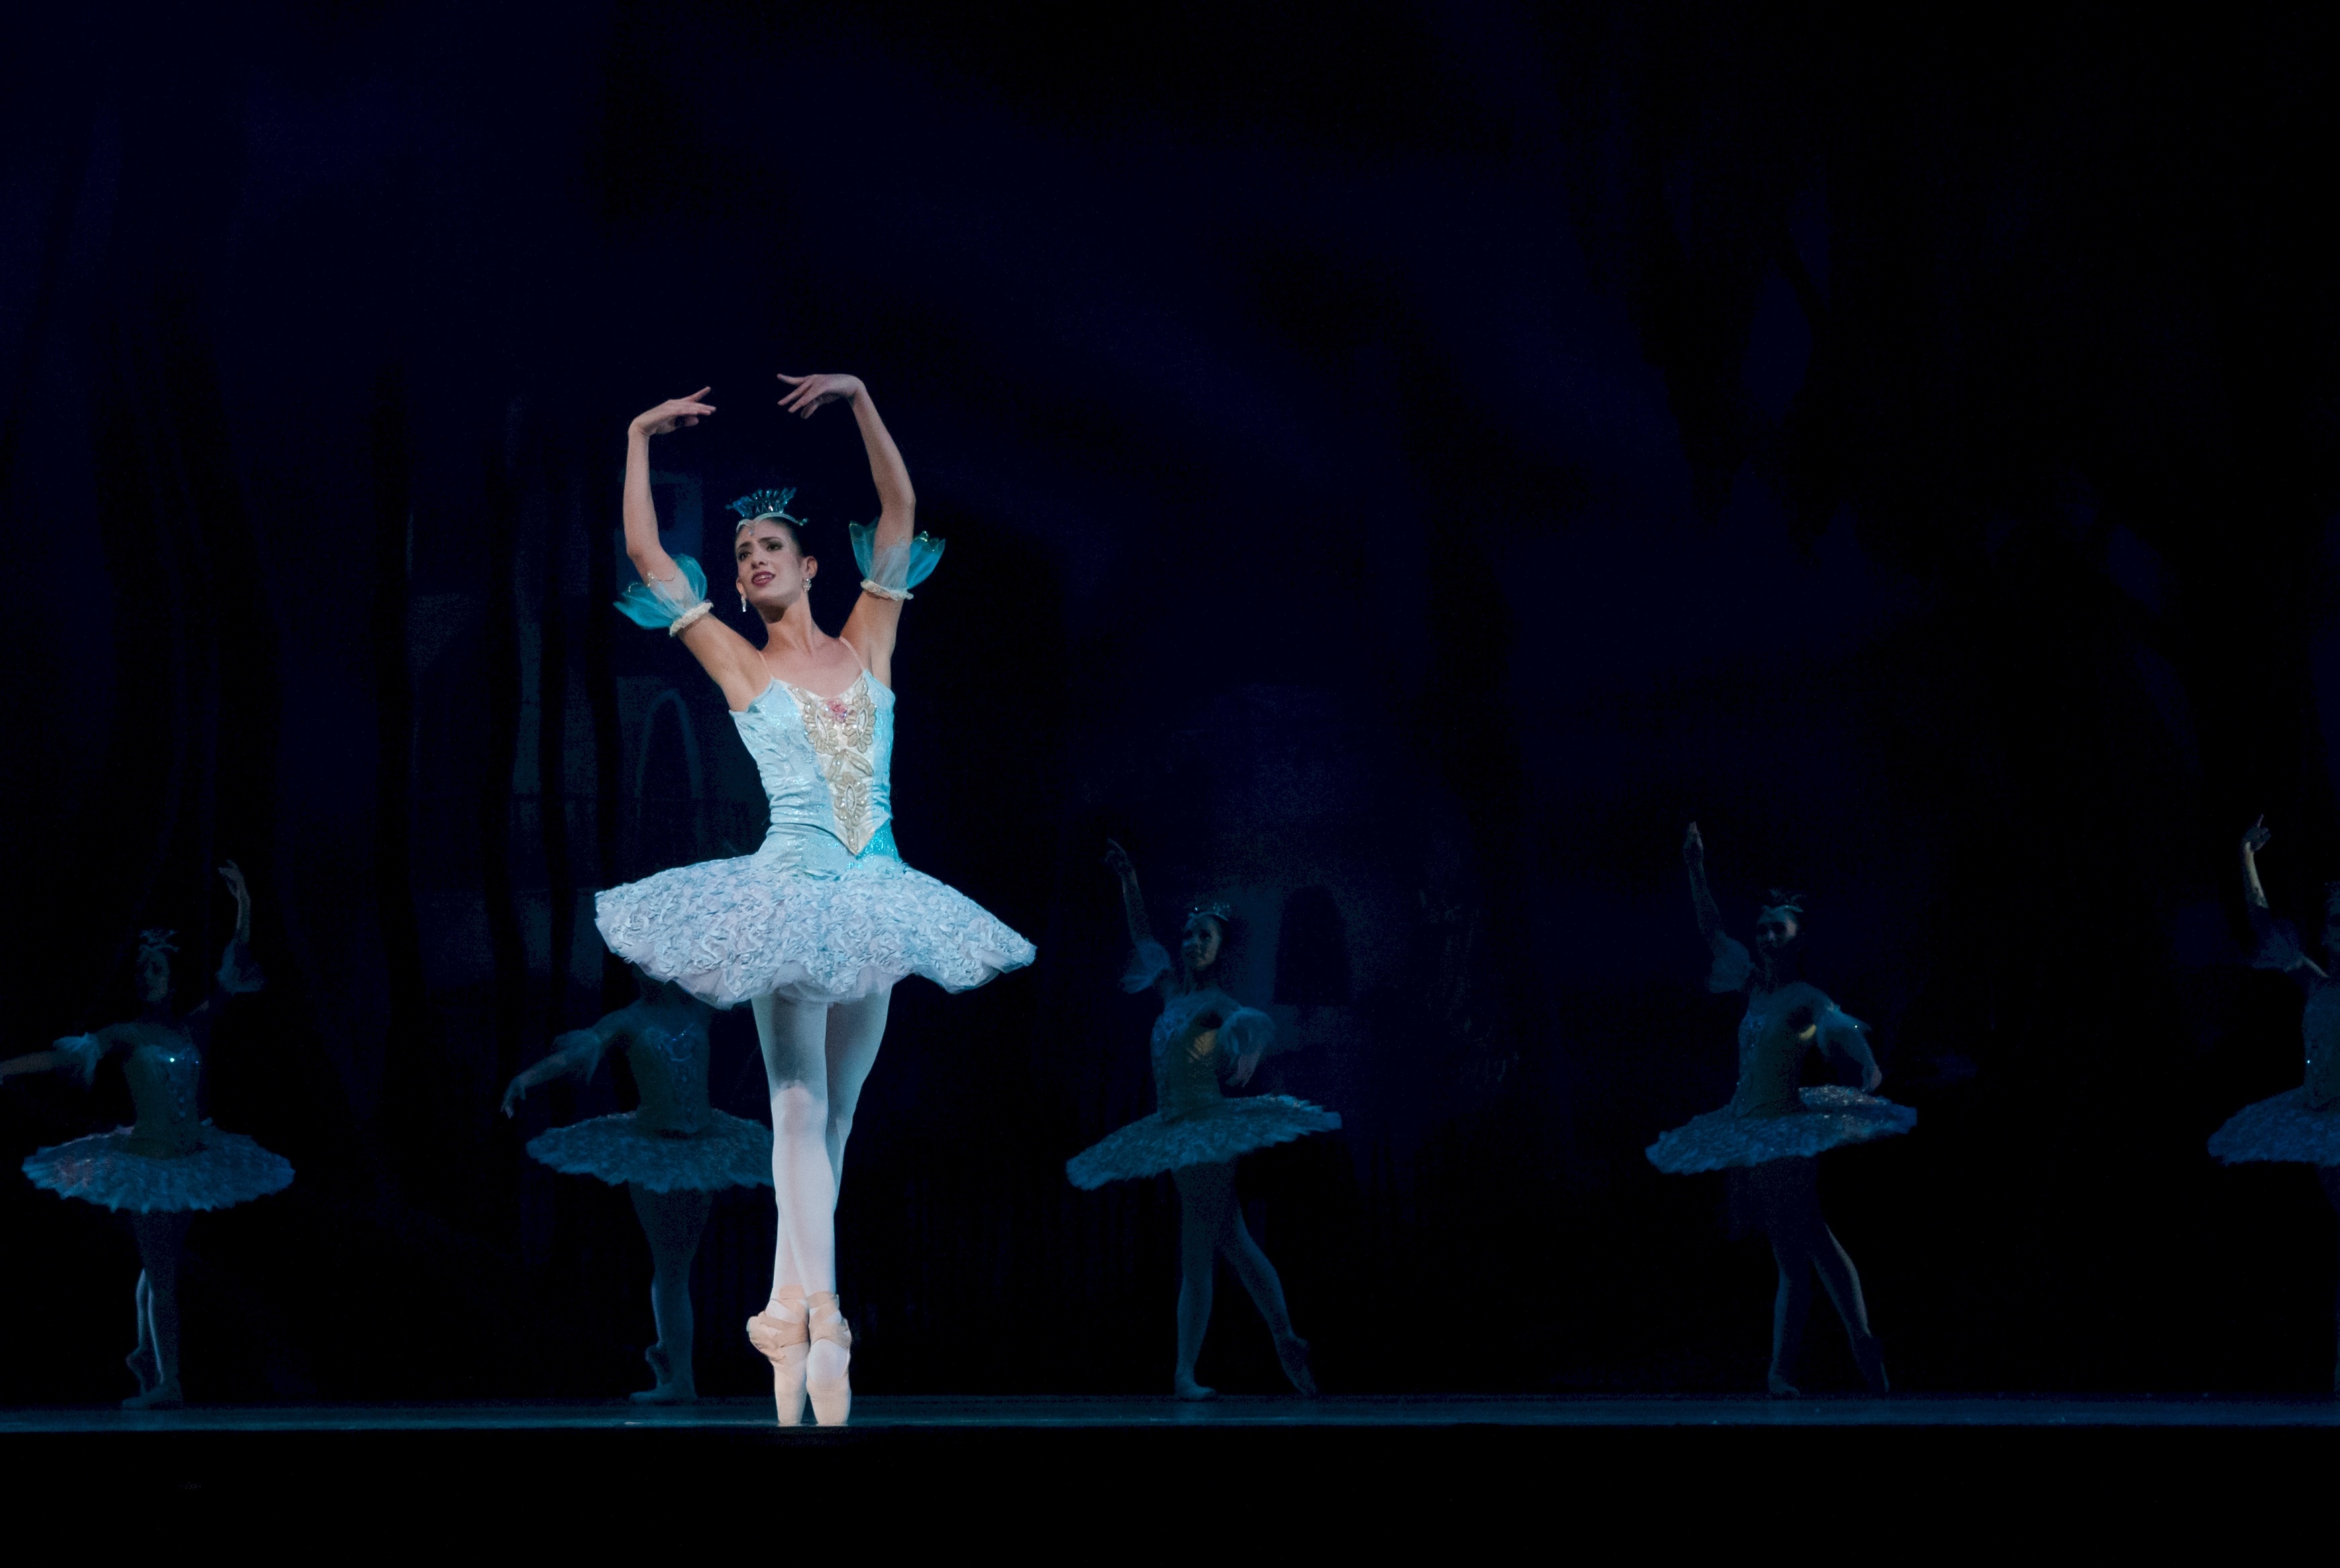 La imagen muestra a una bailarina en puntas y los brazos alzados